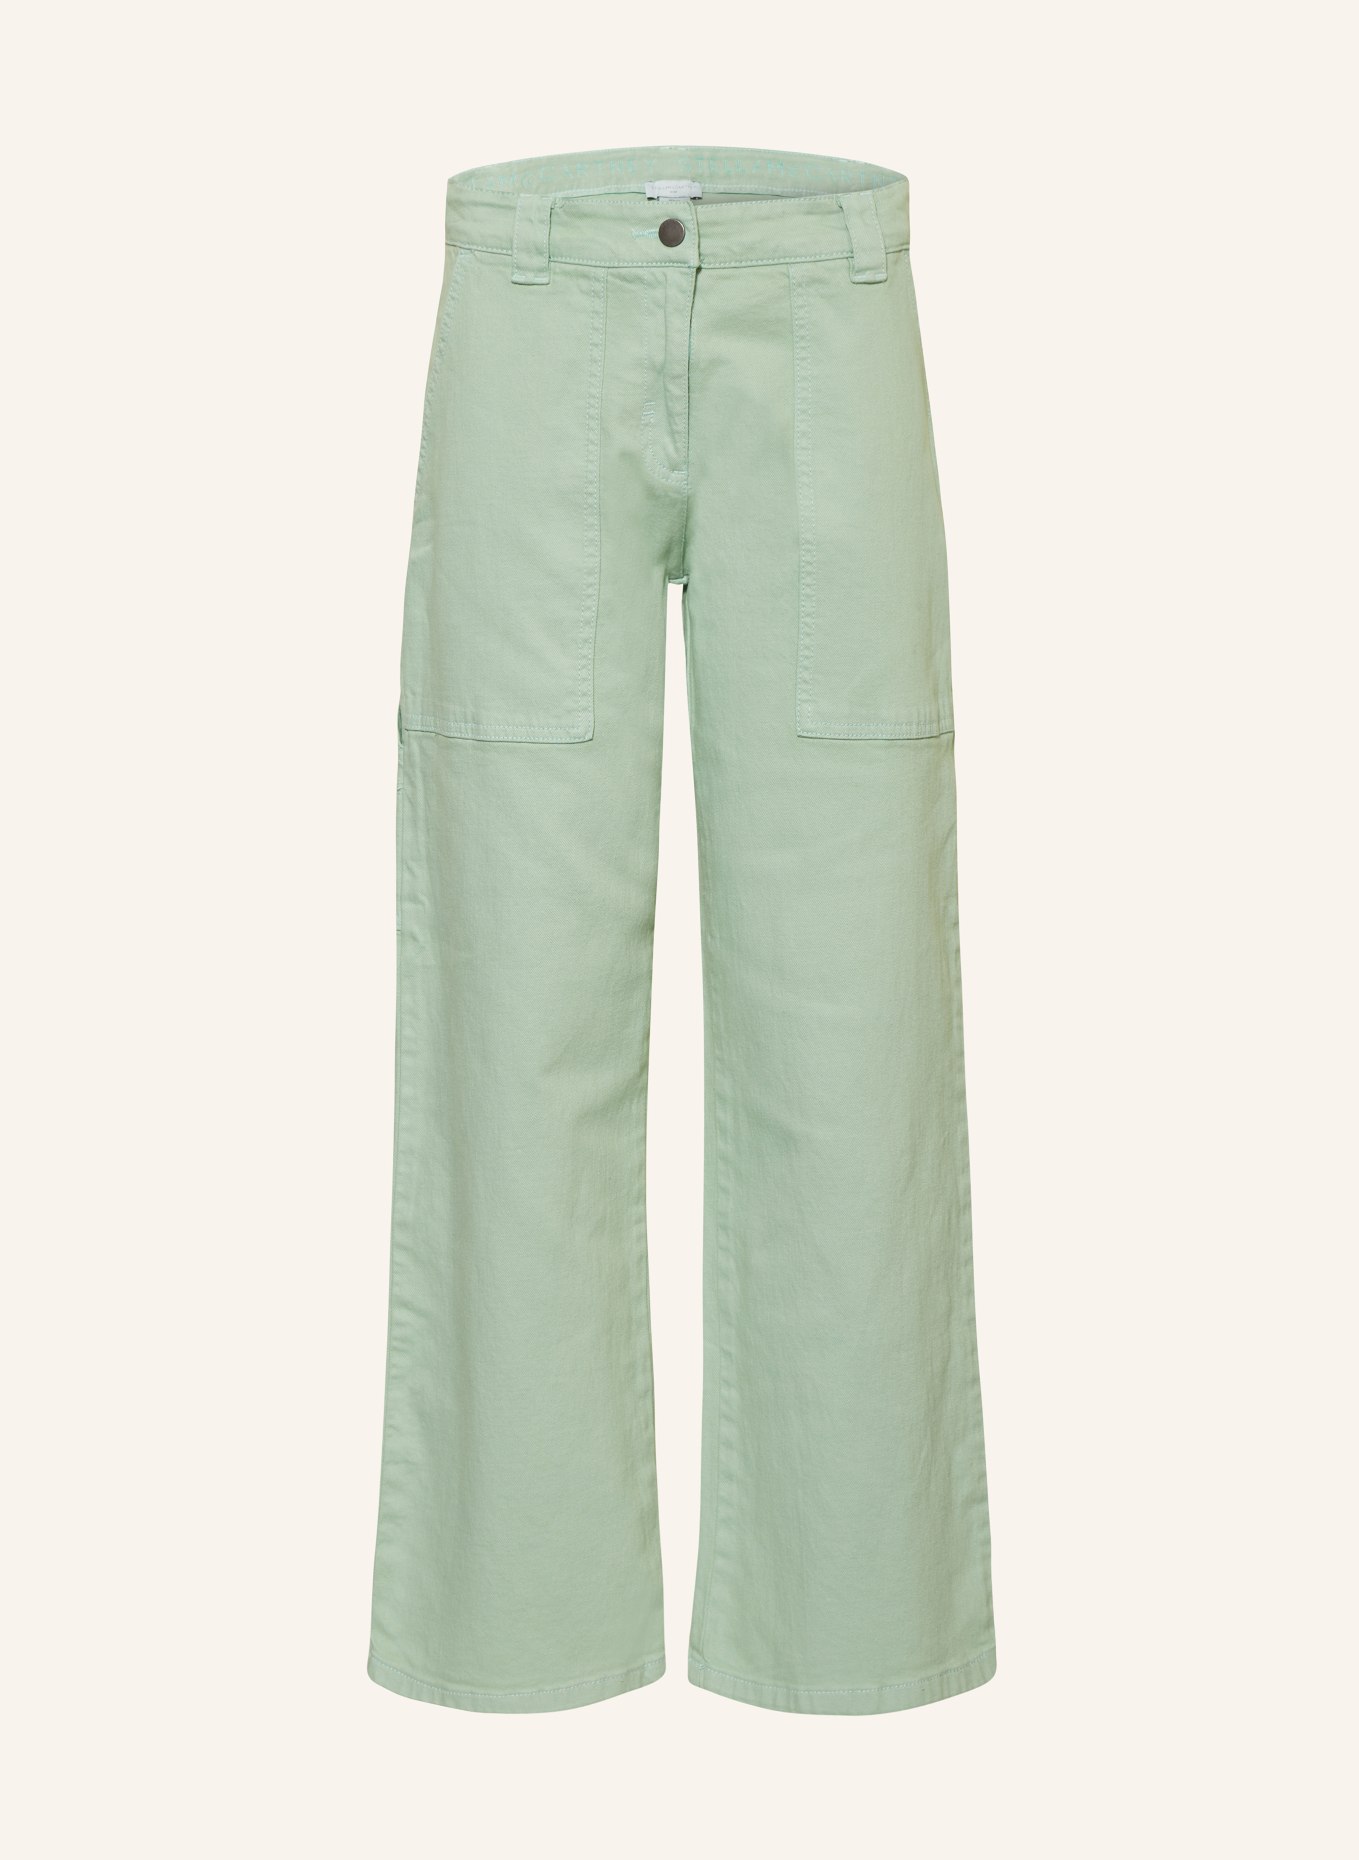 STELLA McCARTNEY KIDS Jeans, Farbe: 708 GREENISH (Bild 1)